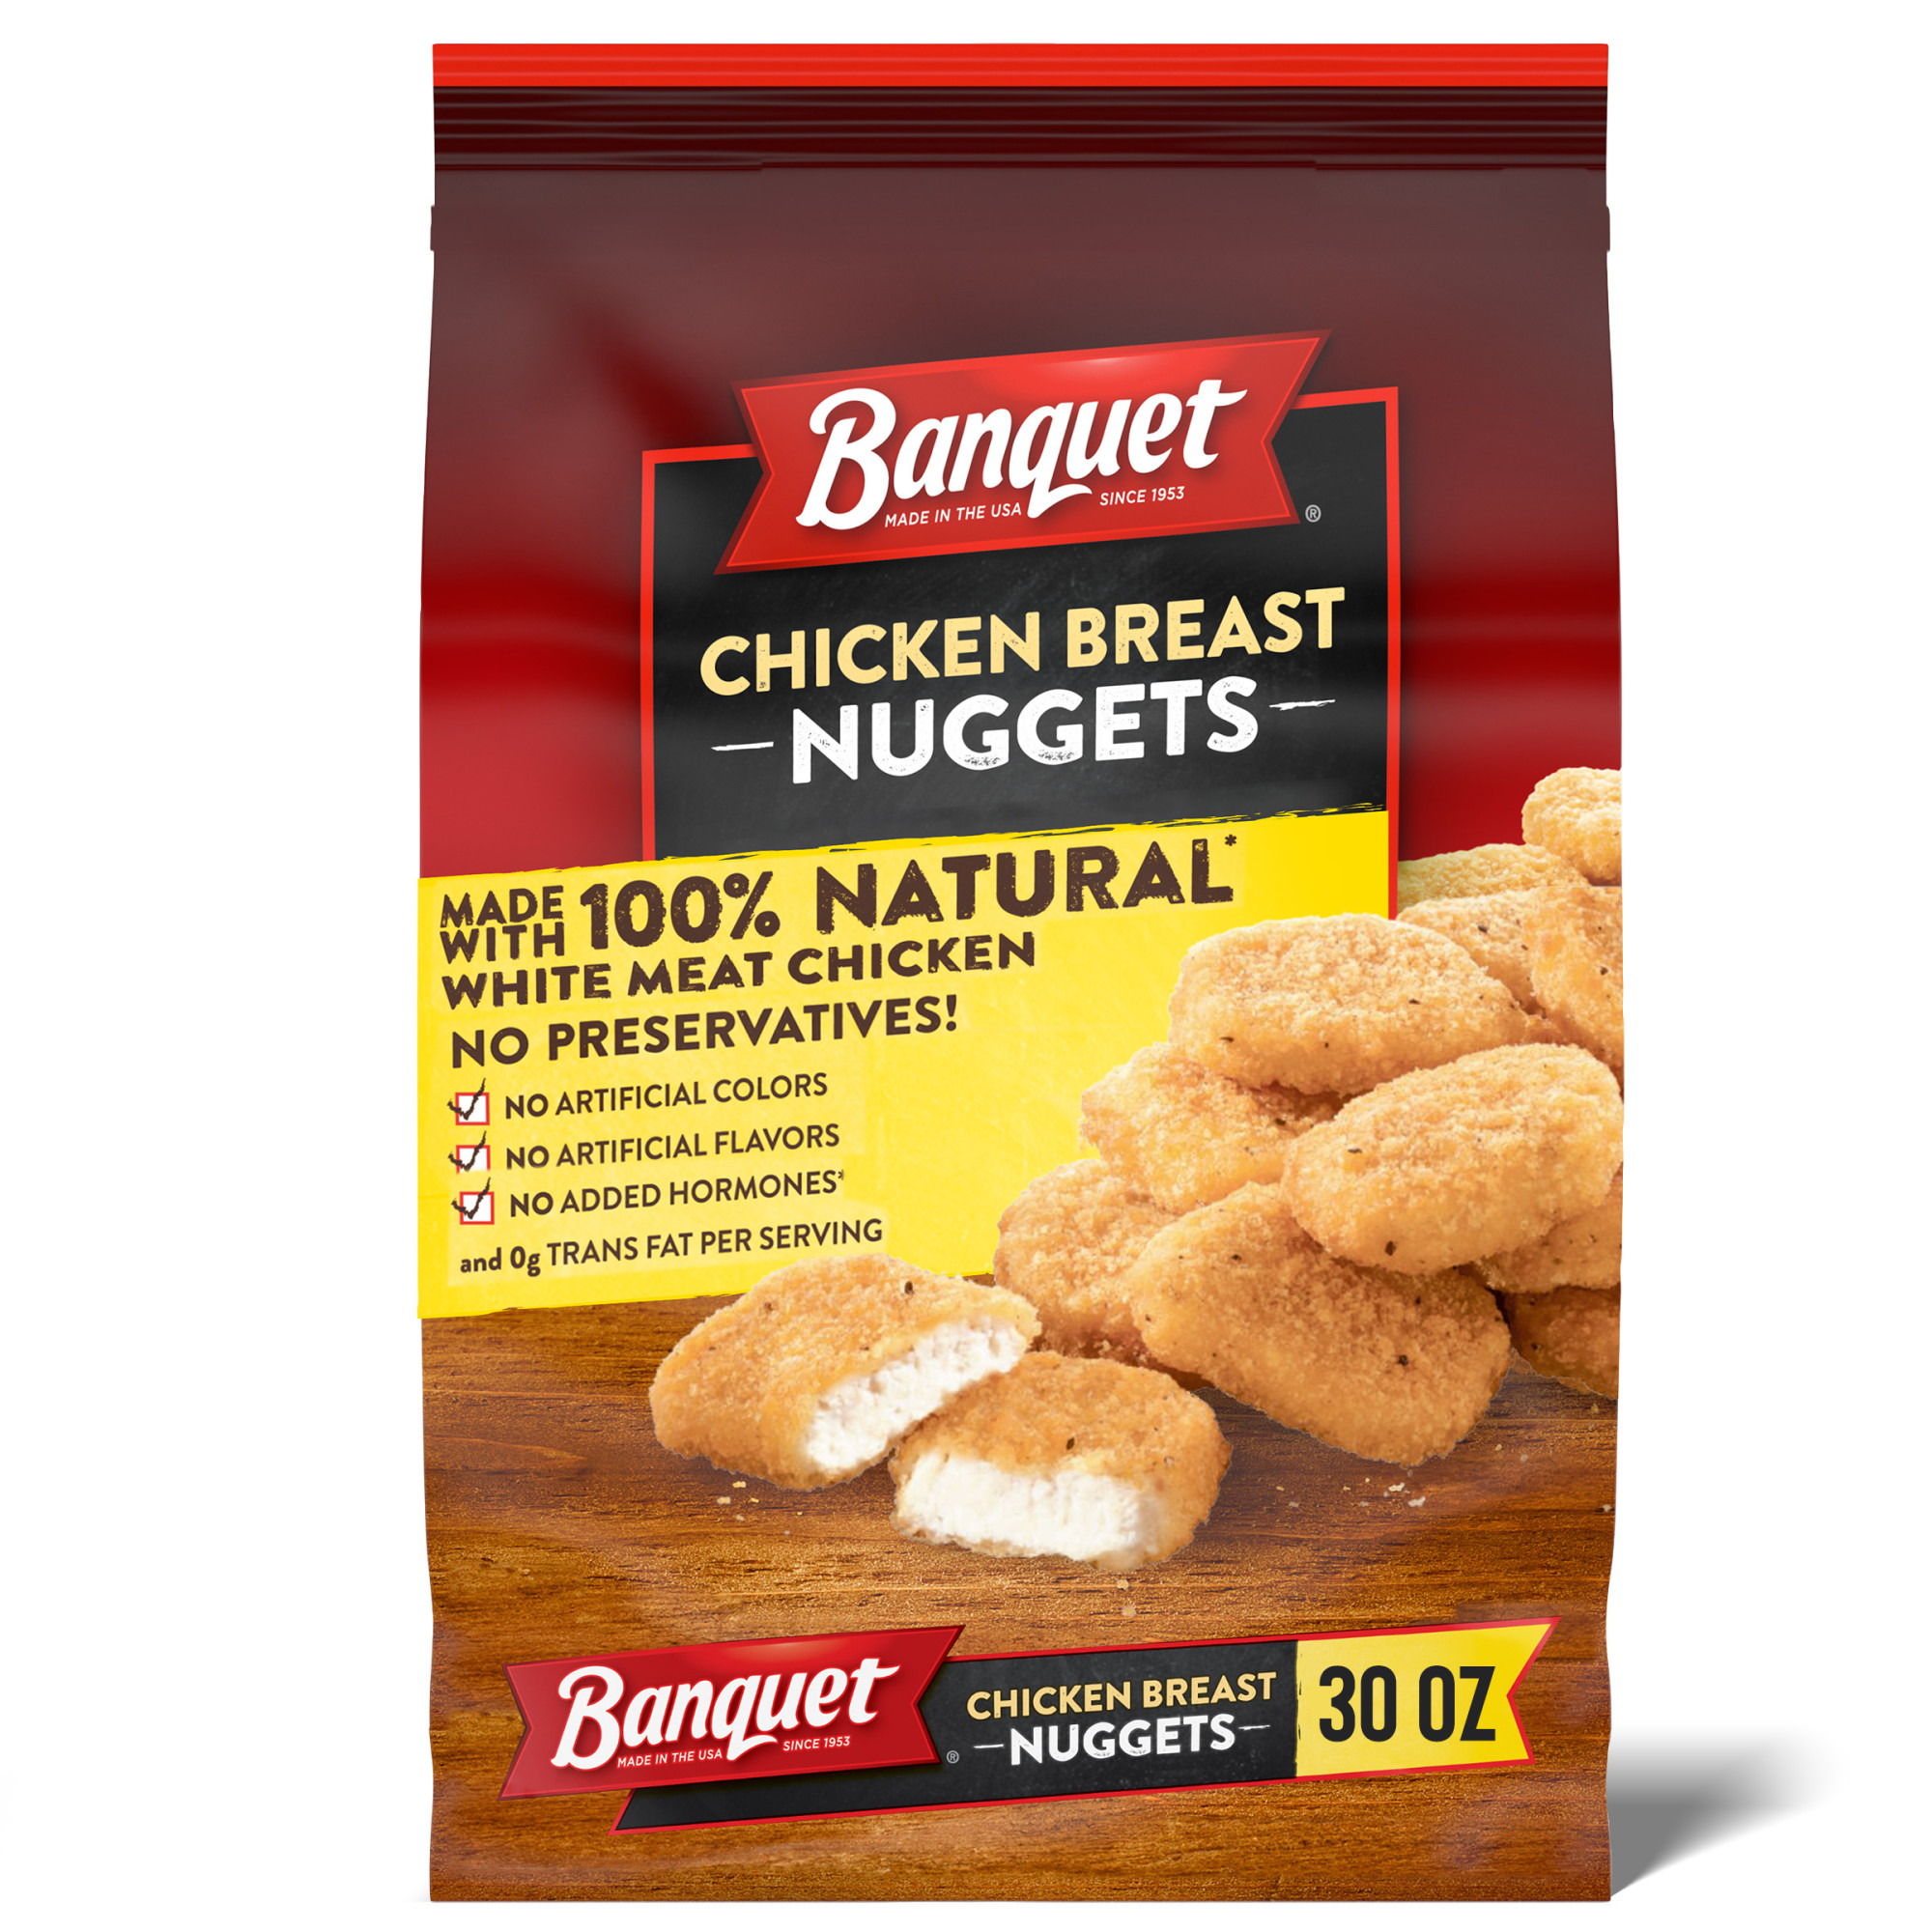 Banquet Chicken Breast Nuggets, Frozen Chicken, 30 oz (Frozen) - image 1 of 8